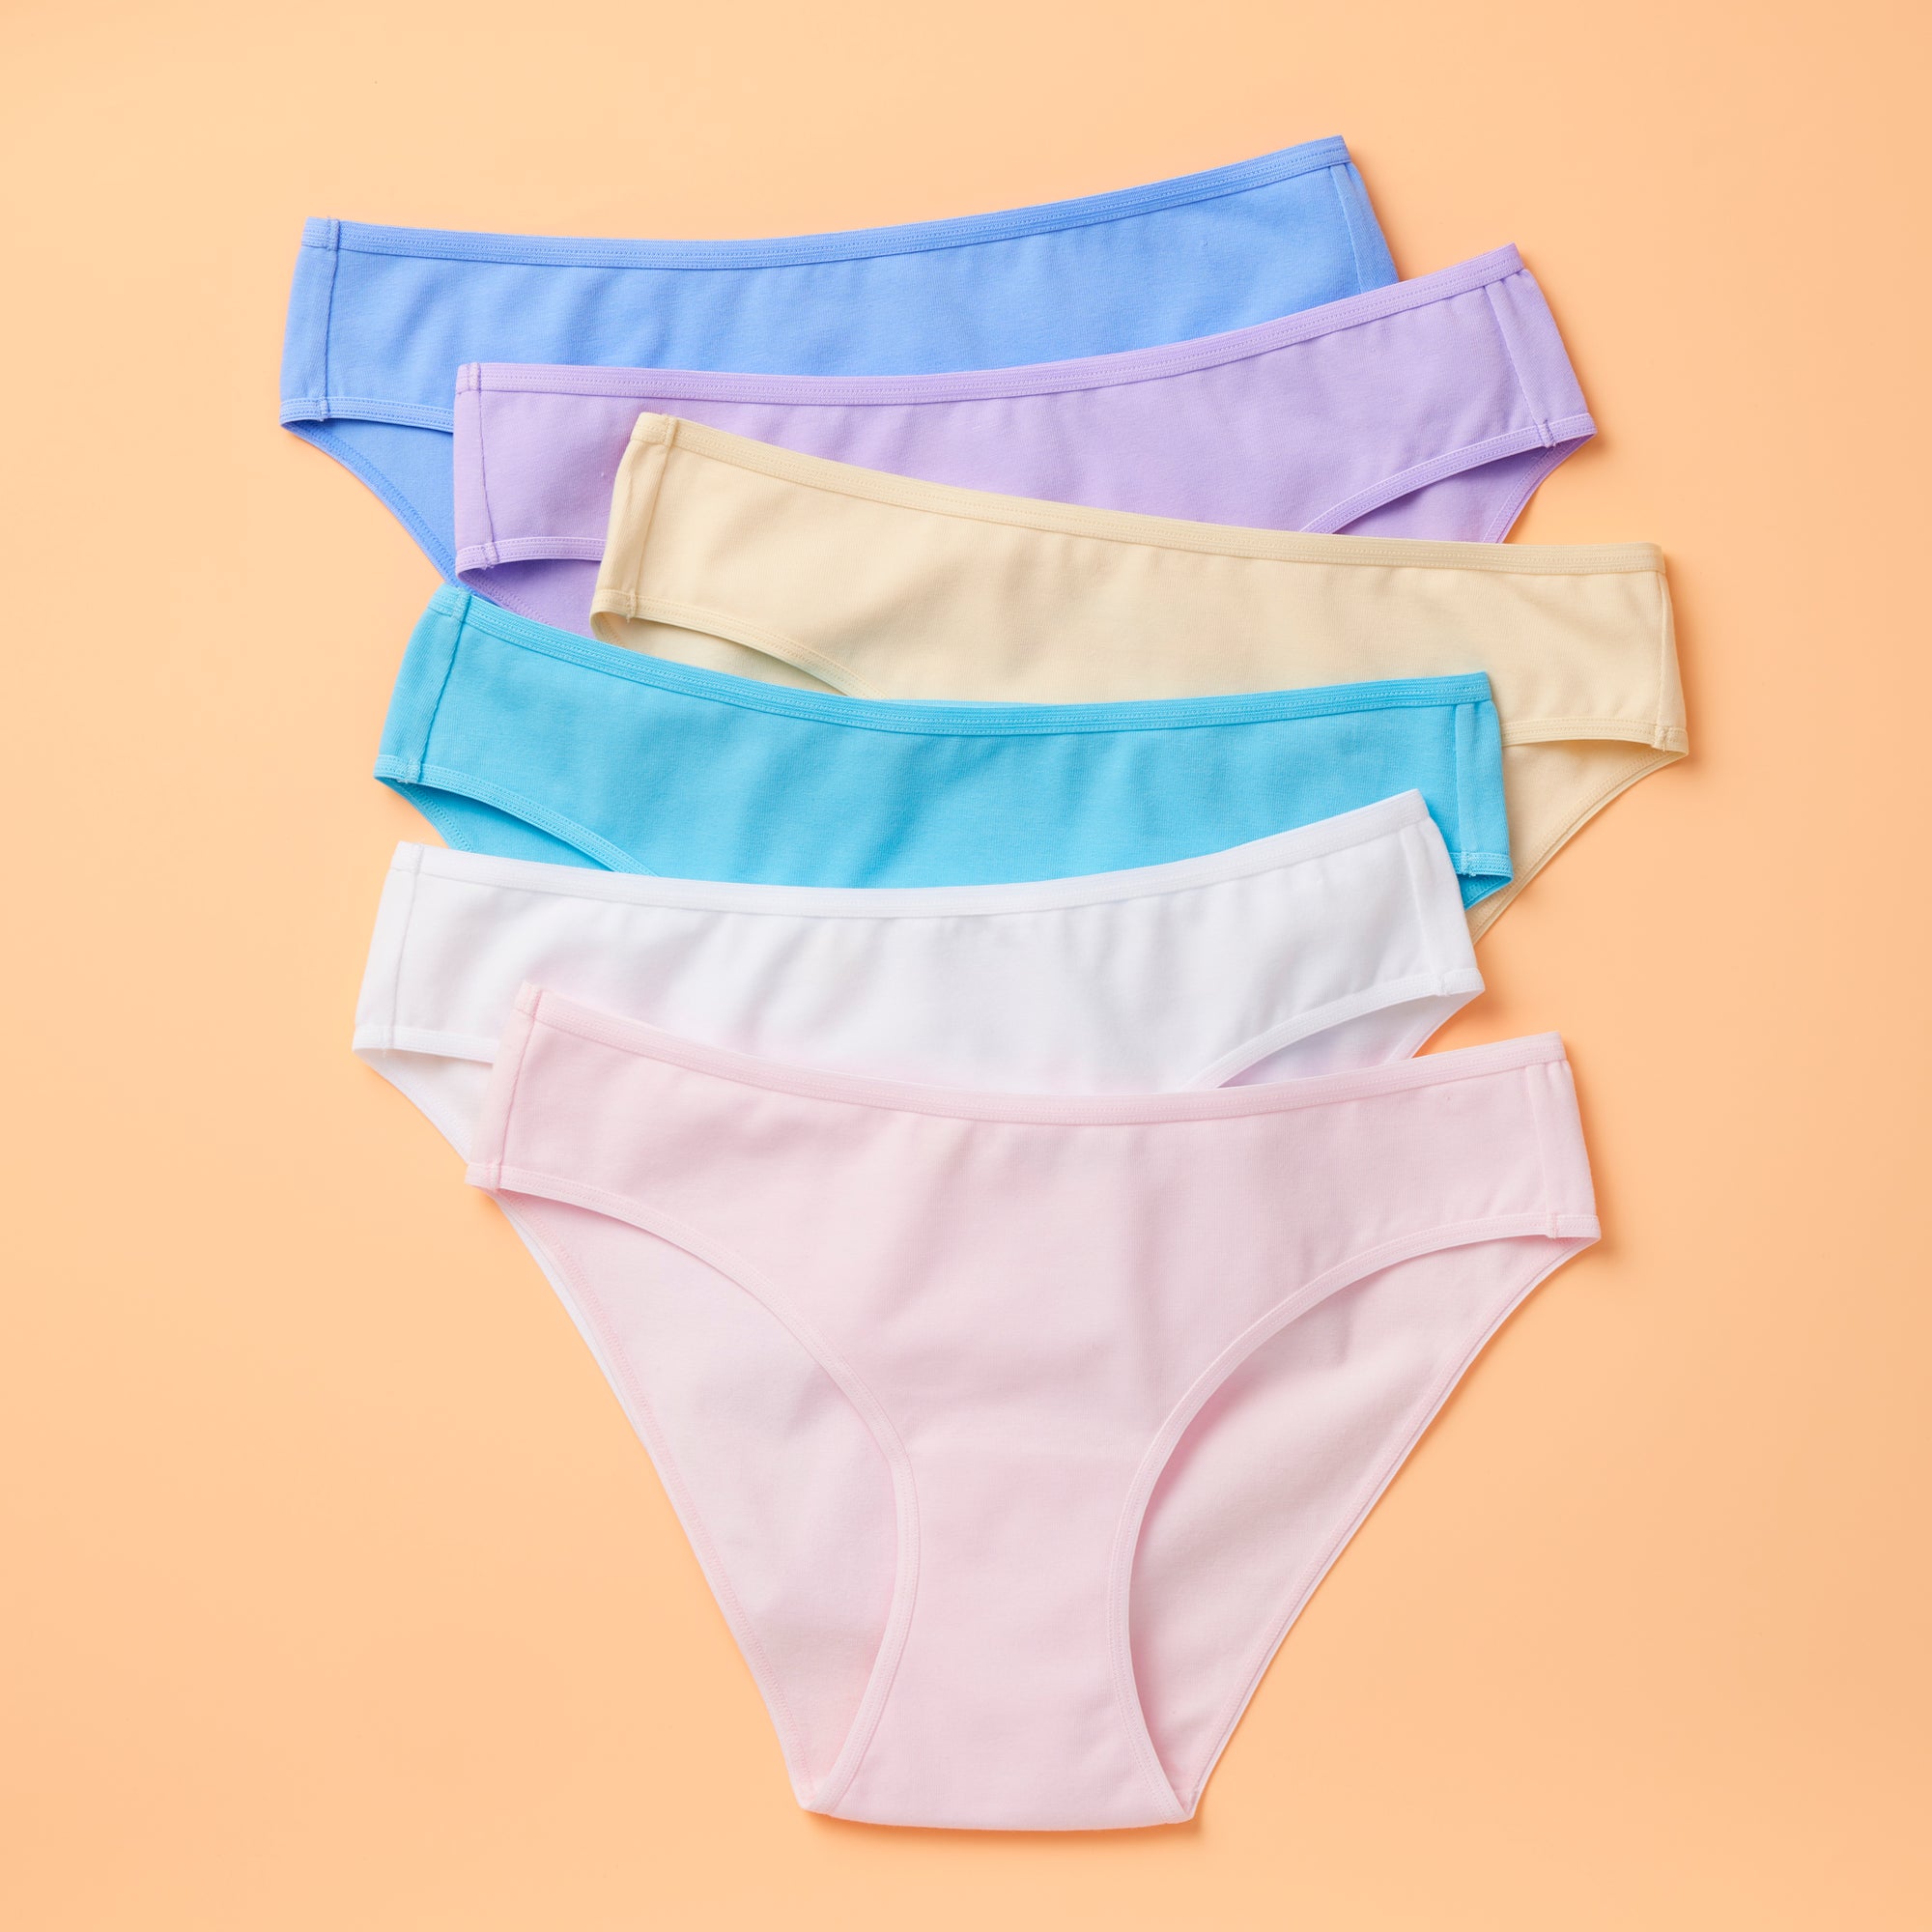 Girls Underwear - The BEST Cotton and Seamless underwear for